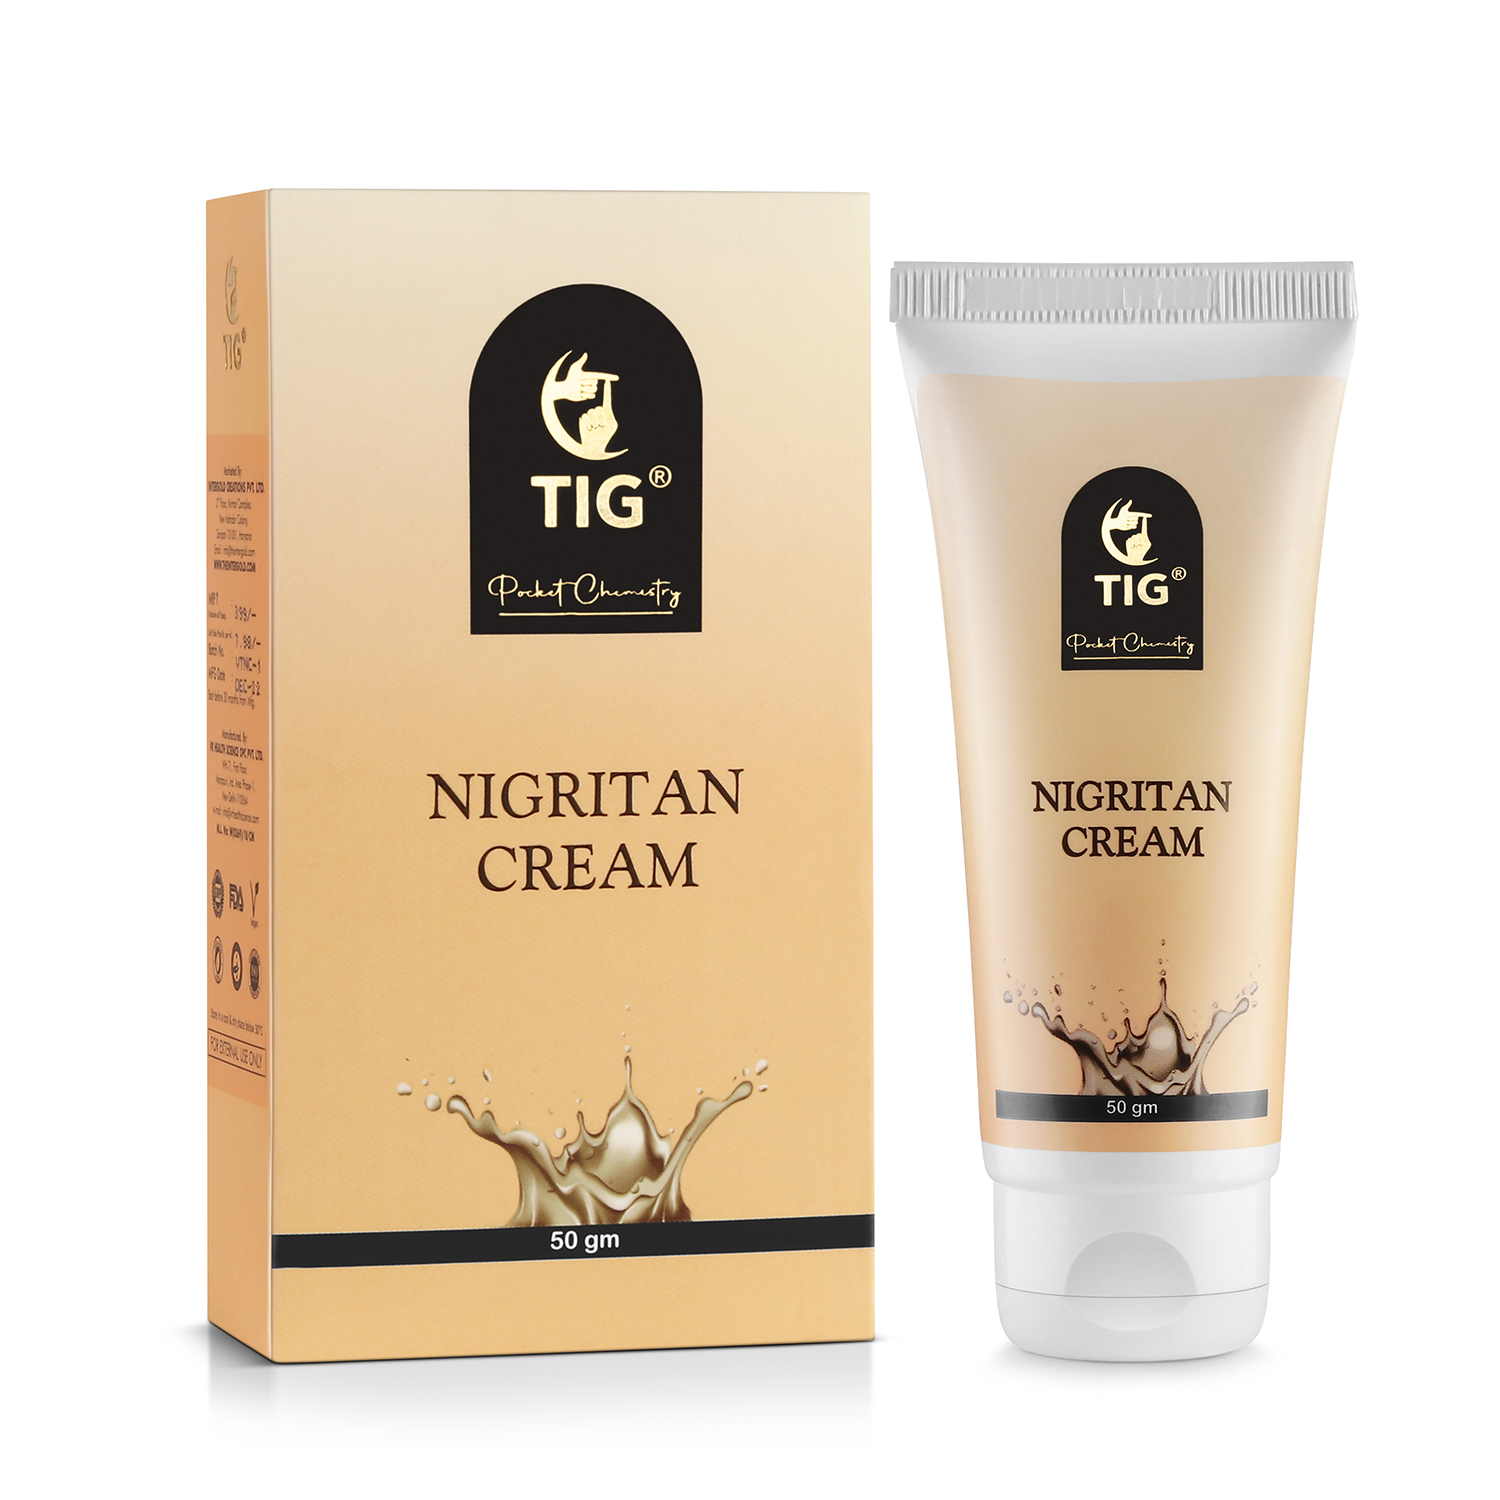 TIG Nigritan Cream 50gm